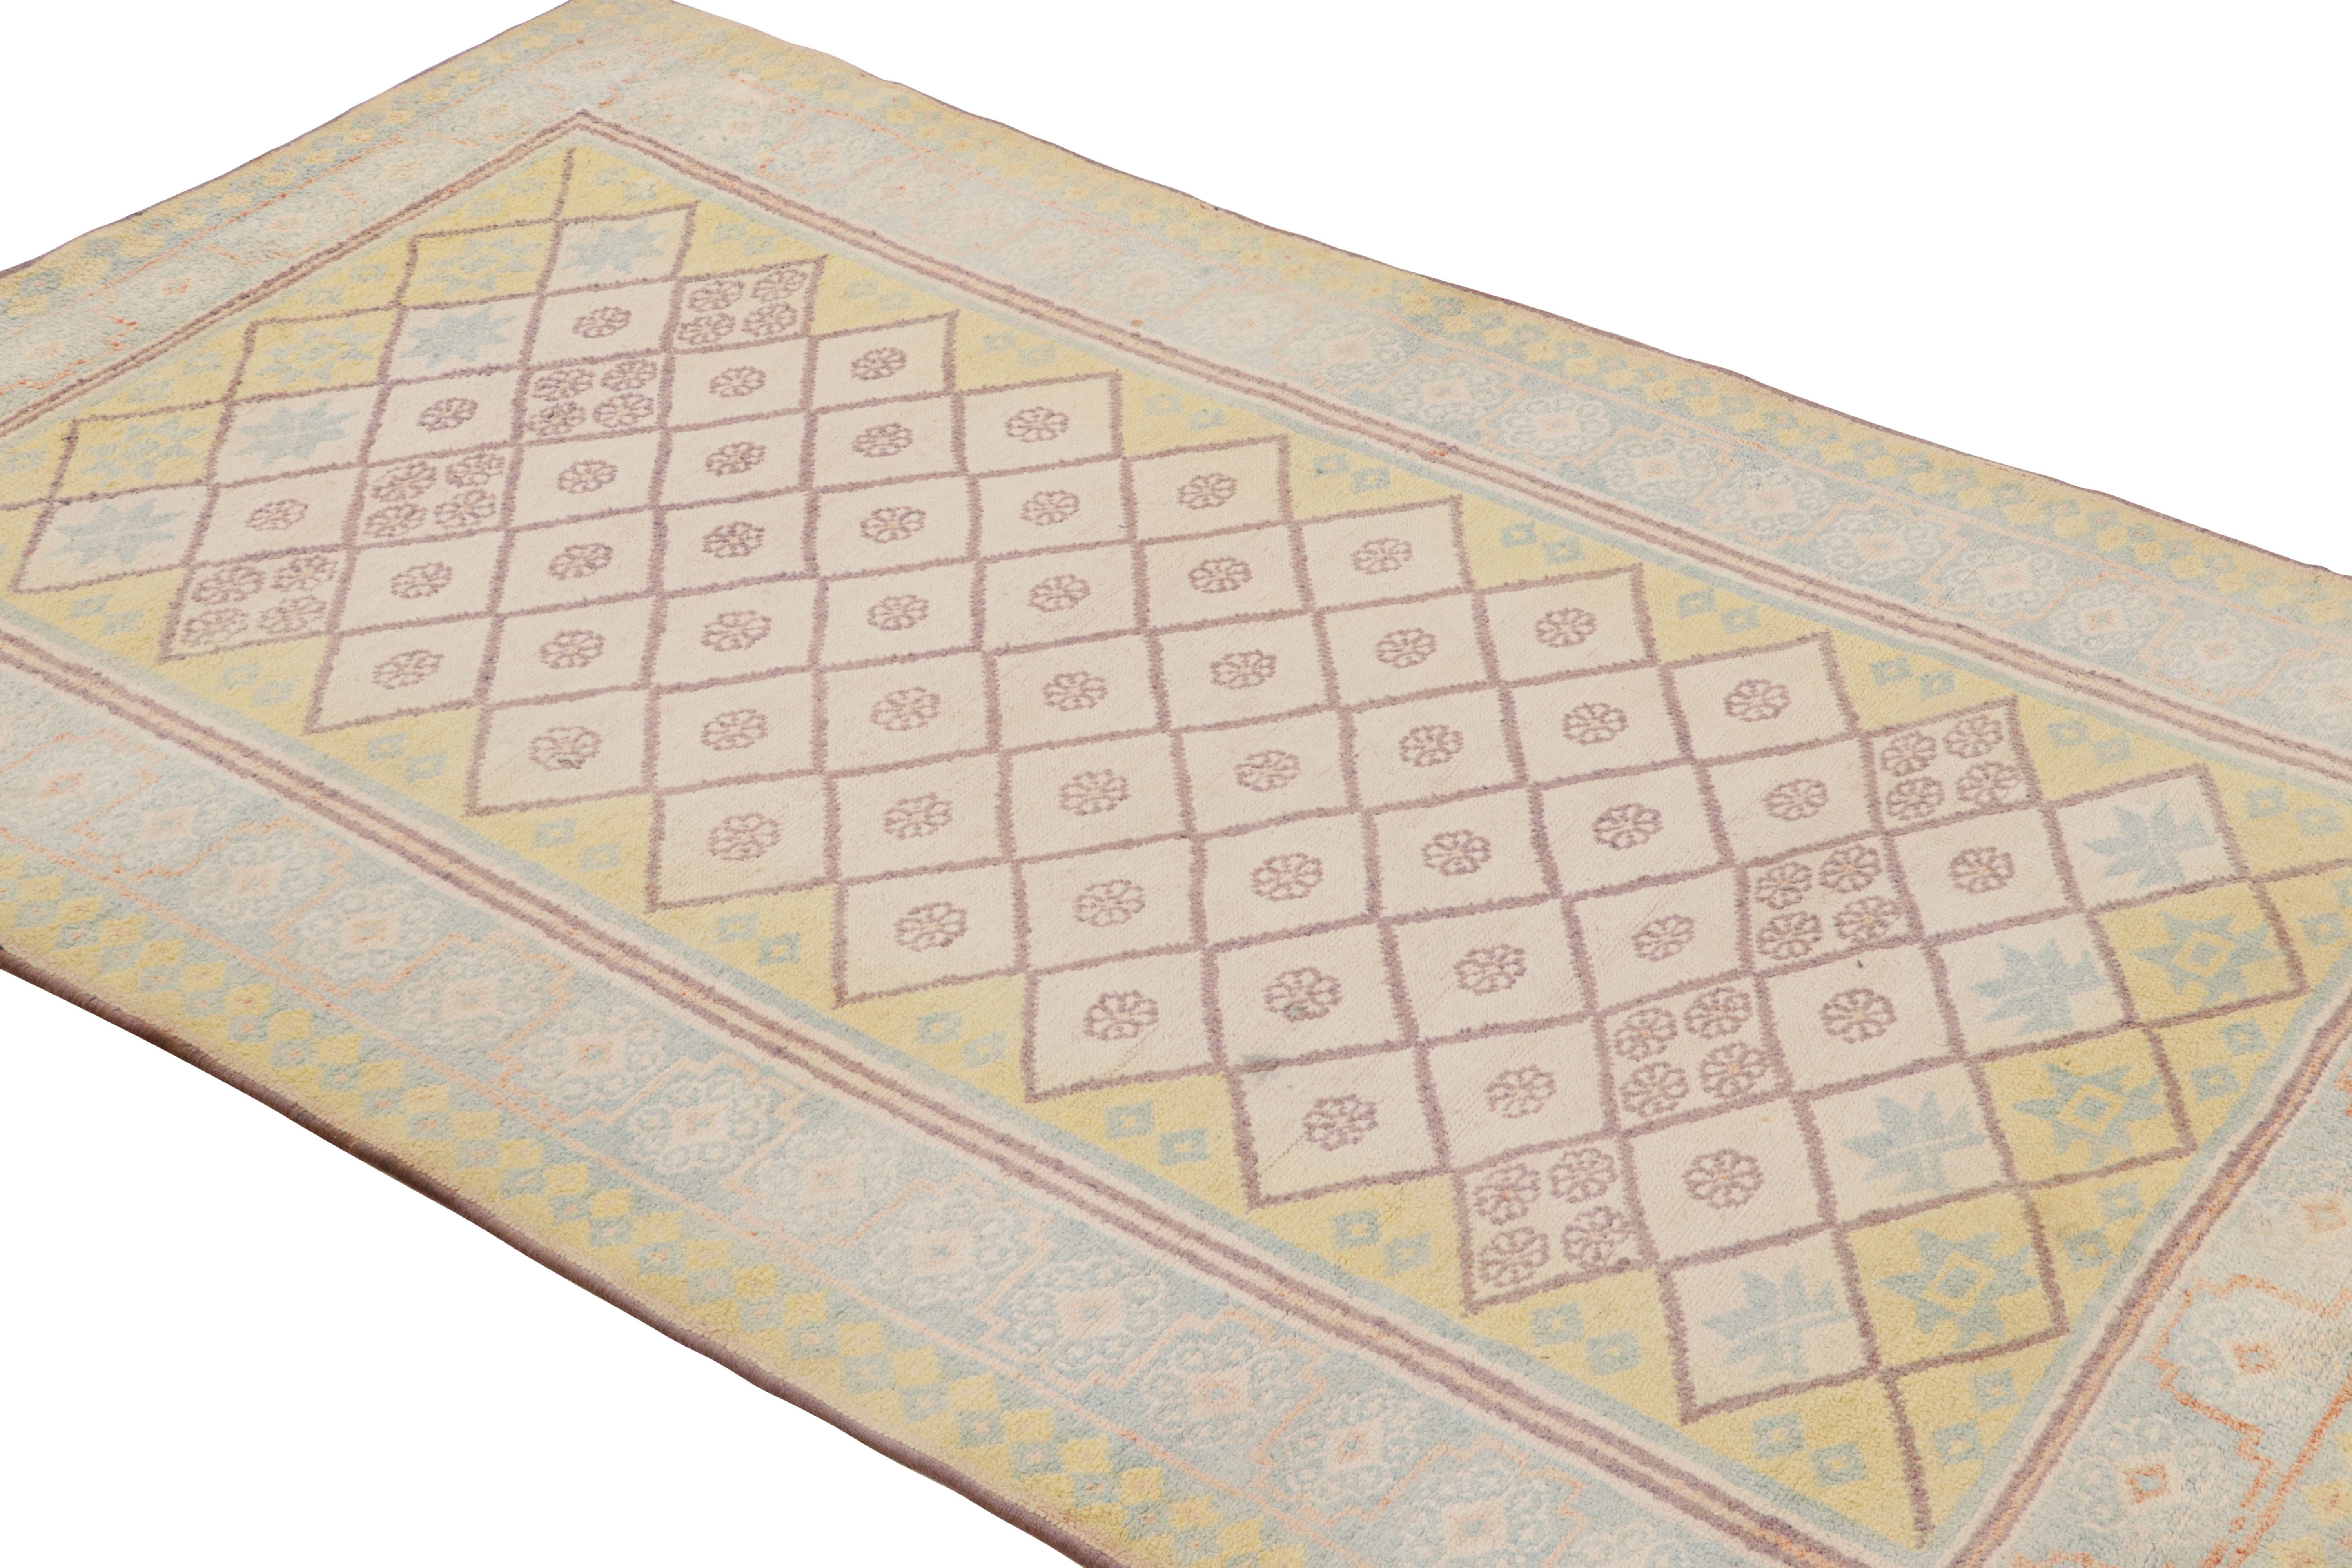 Noué à la main en coton vers 1920-1930, ce chemin de table de 4x7 est un tapis ancien particulièrement rare d'Agra, en Inde. 

Sur le Design : 

La palette de couleurs est l'une des nombreuses caractéristiques particulièrement délicieuses qui